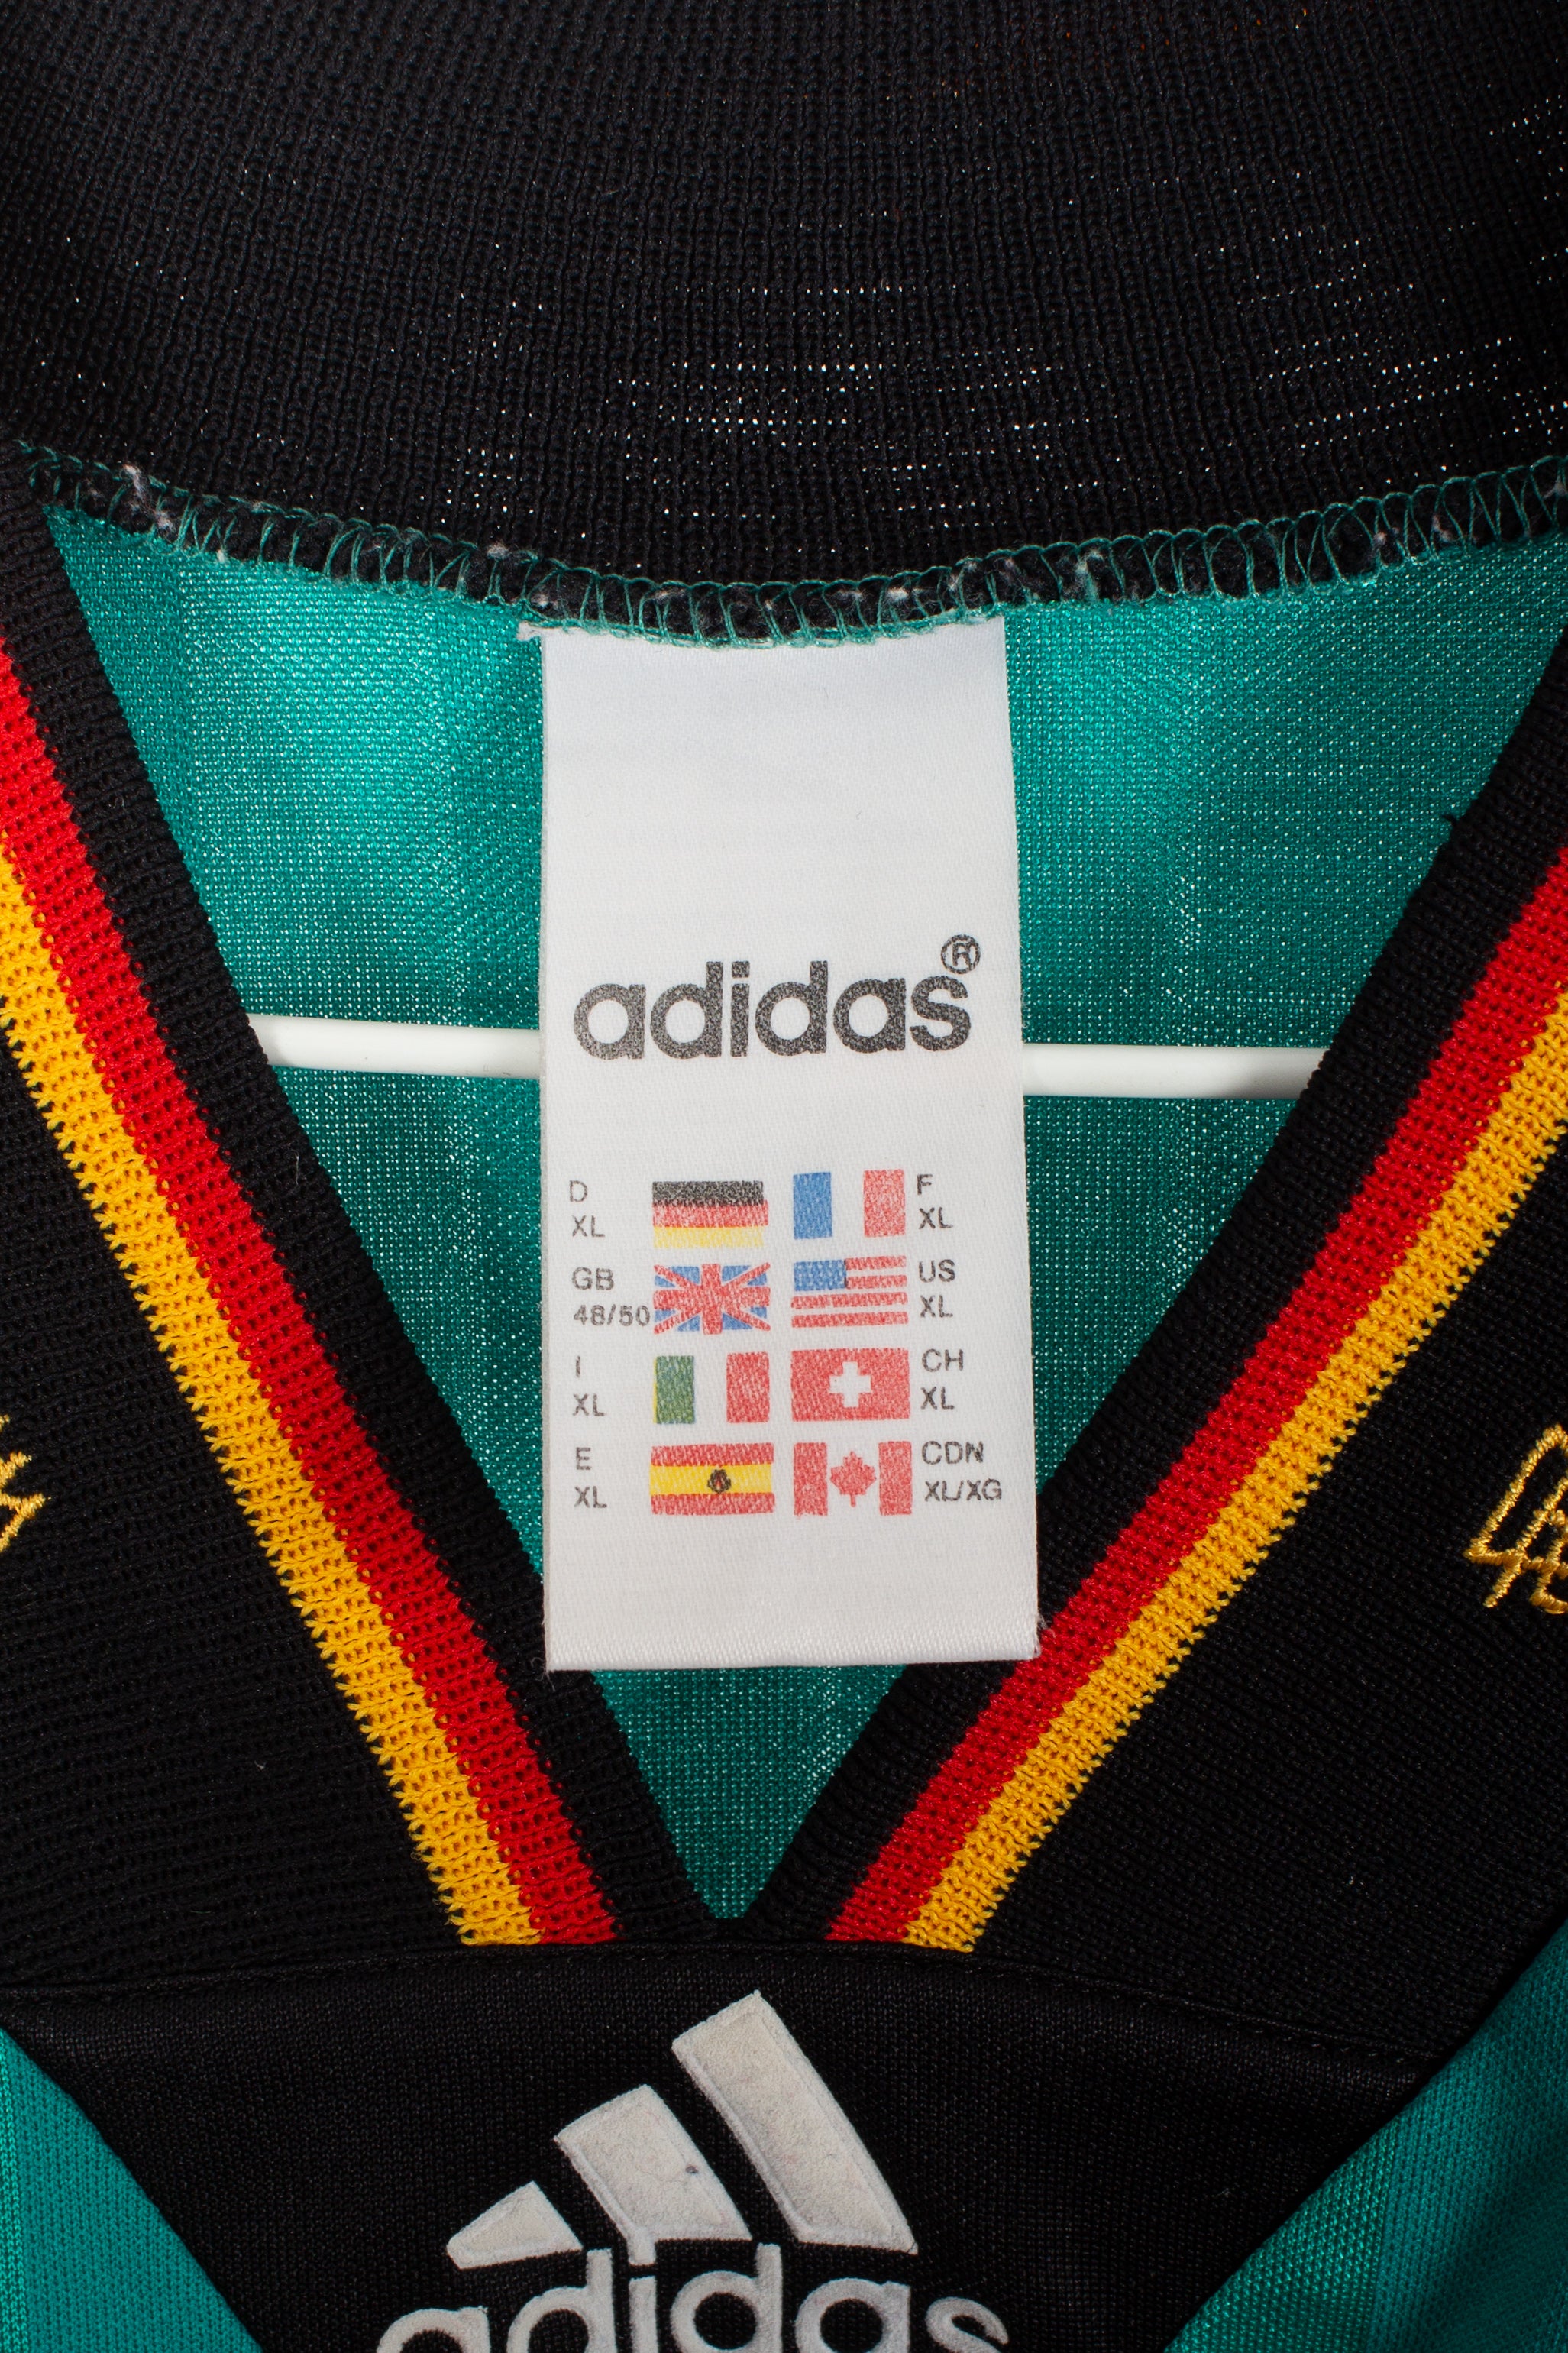 Germany 1992 Away Shirt (XL)